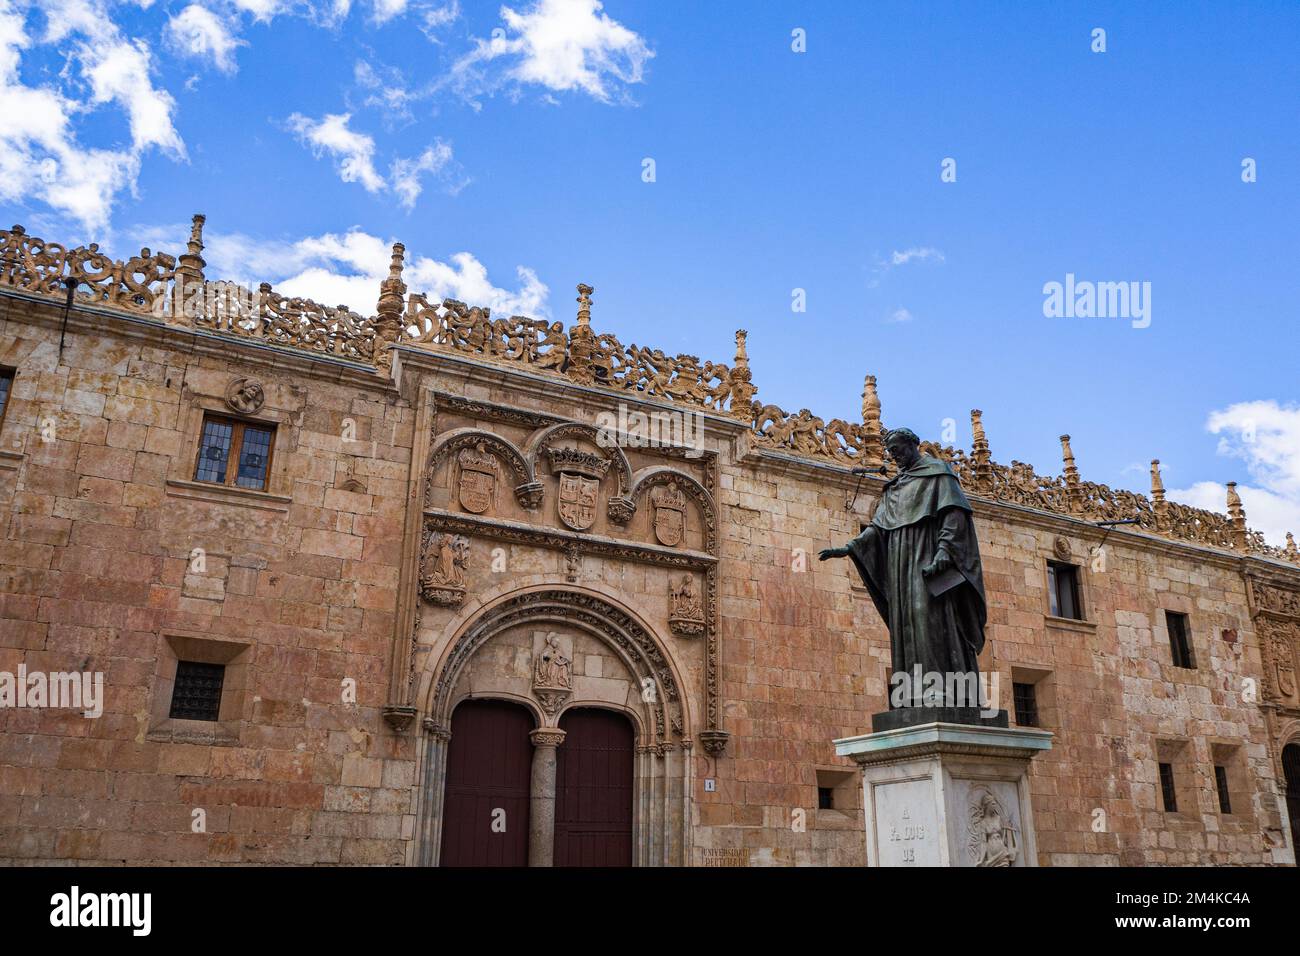 Una facciata dell'Università di Salamanca e la statua di Fray Luis de Leon Foto Stock